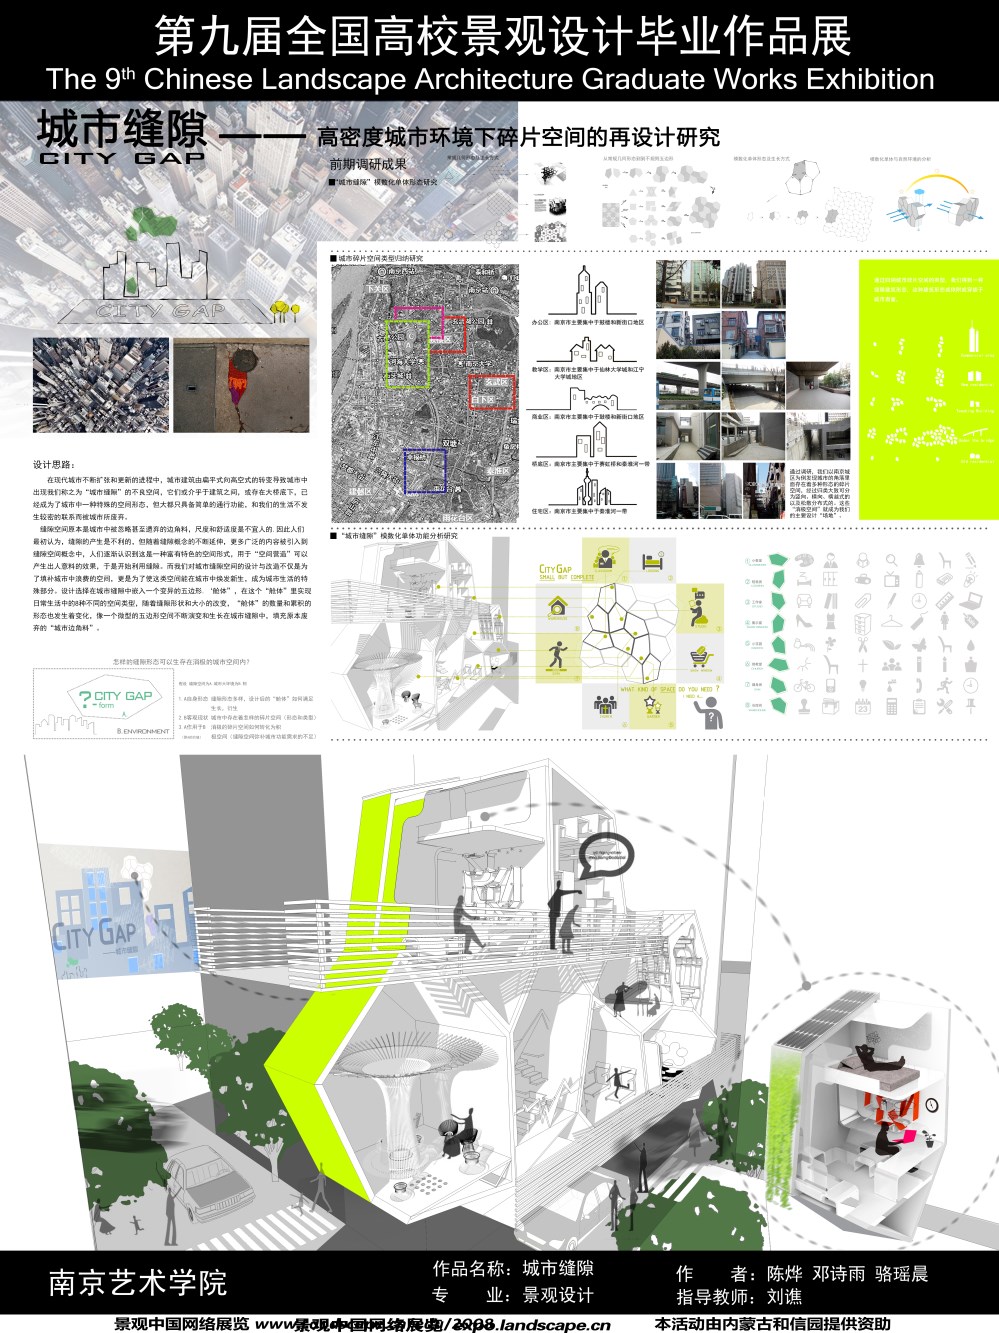 城市缝隙——高密度城市环境下碎片空间的再设计研究-1